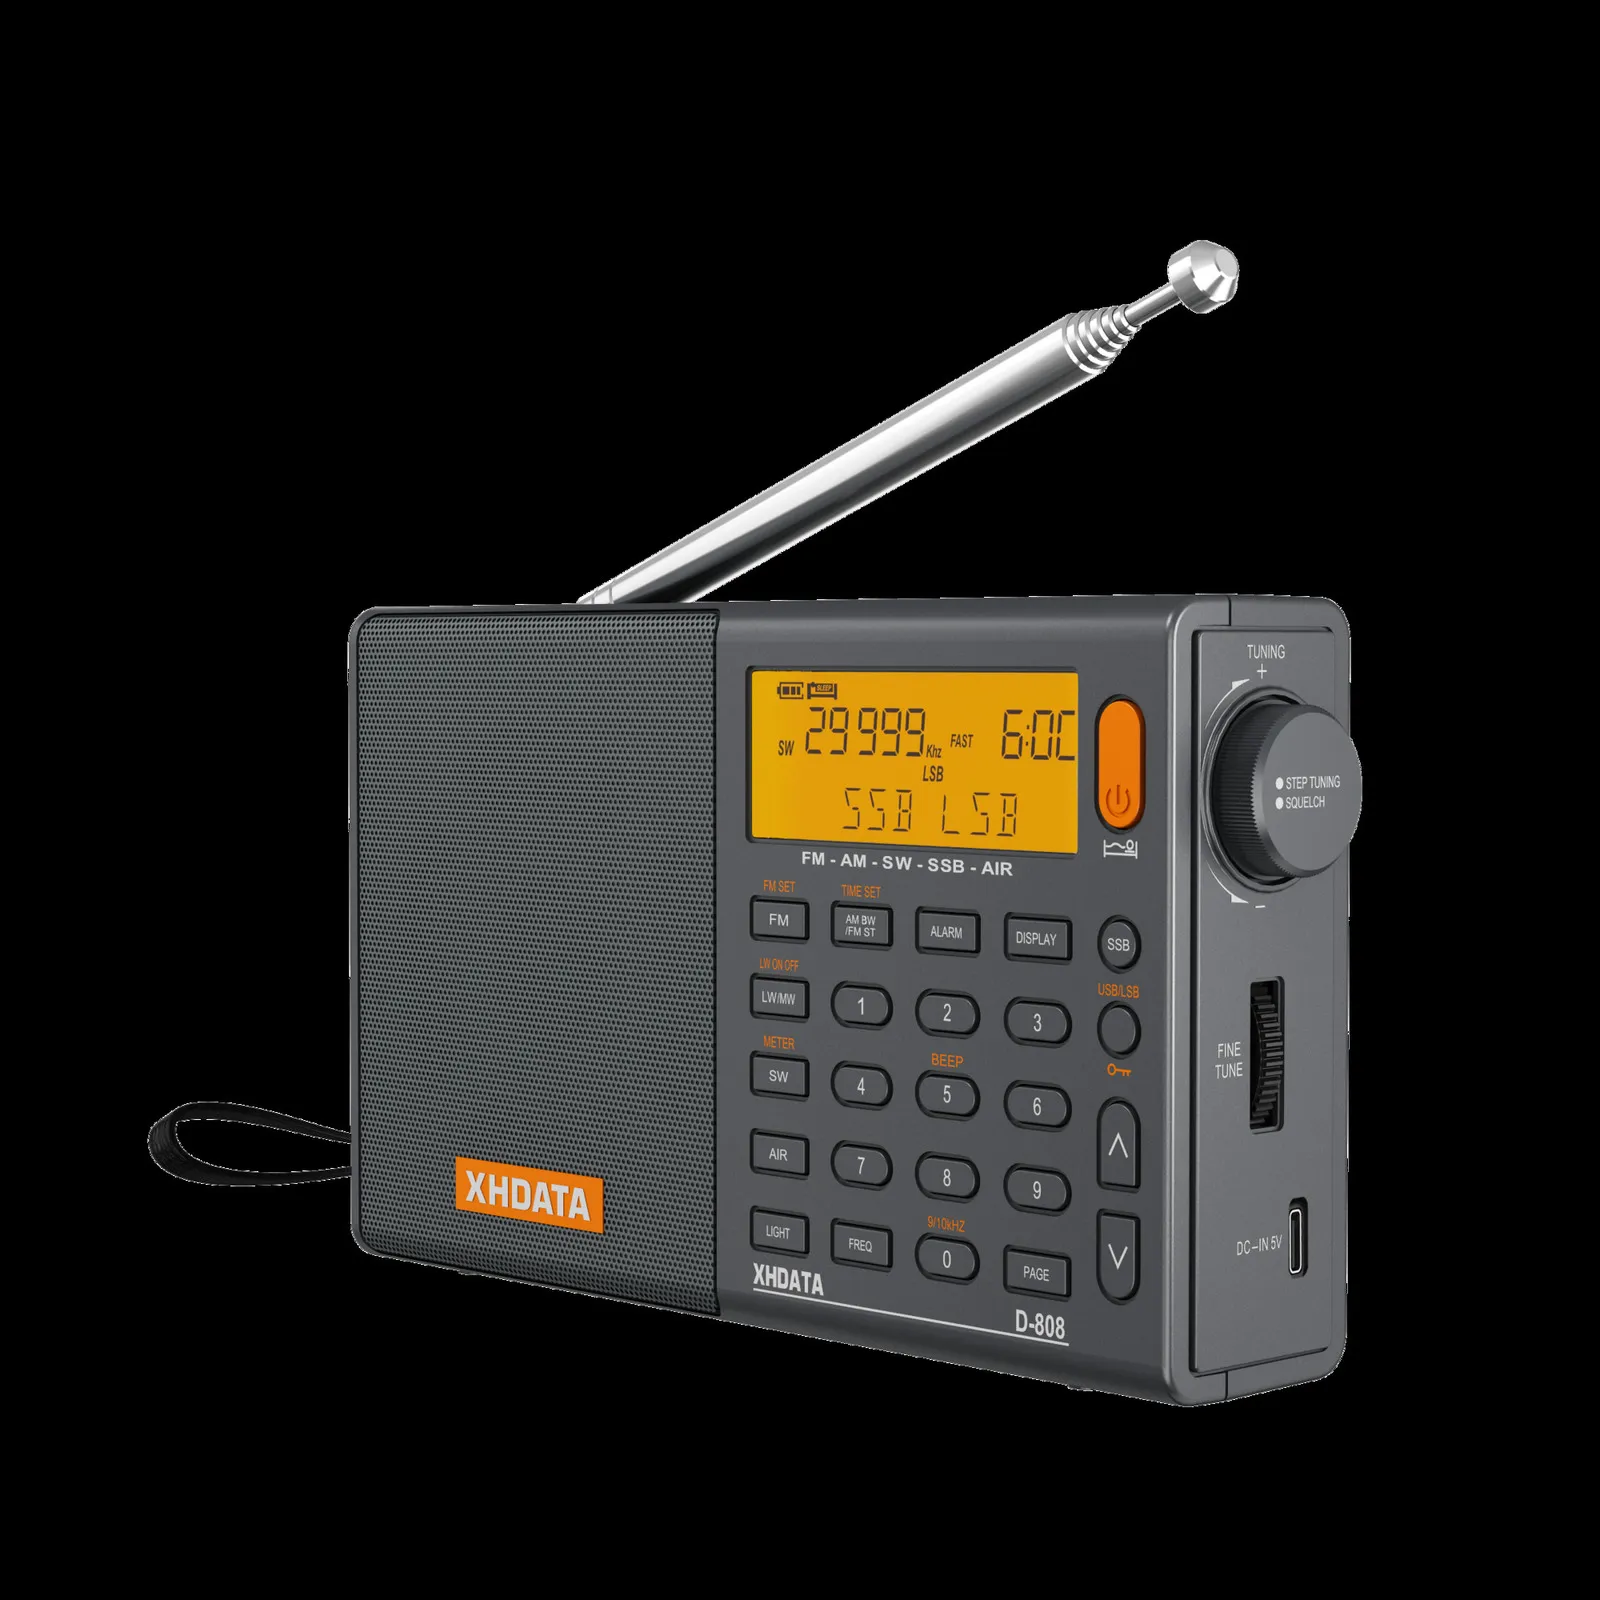 Radio portable Mini radio de poche avec haut-parleur FM / AM numérique  stéréo DSP récepteur avec réveil et